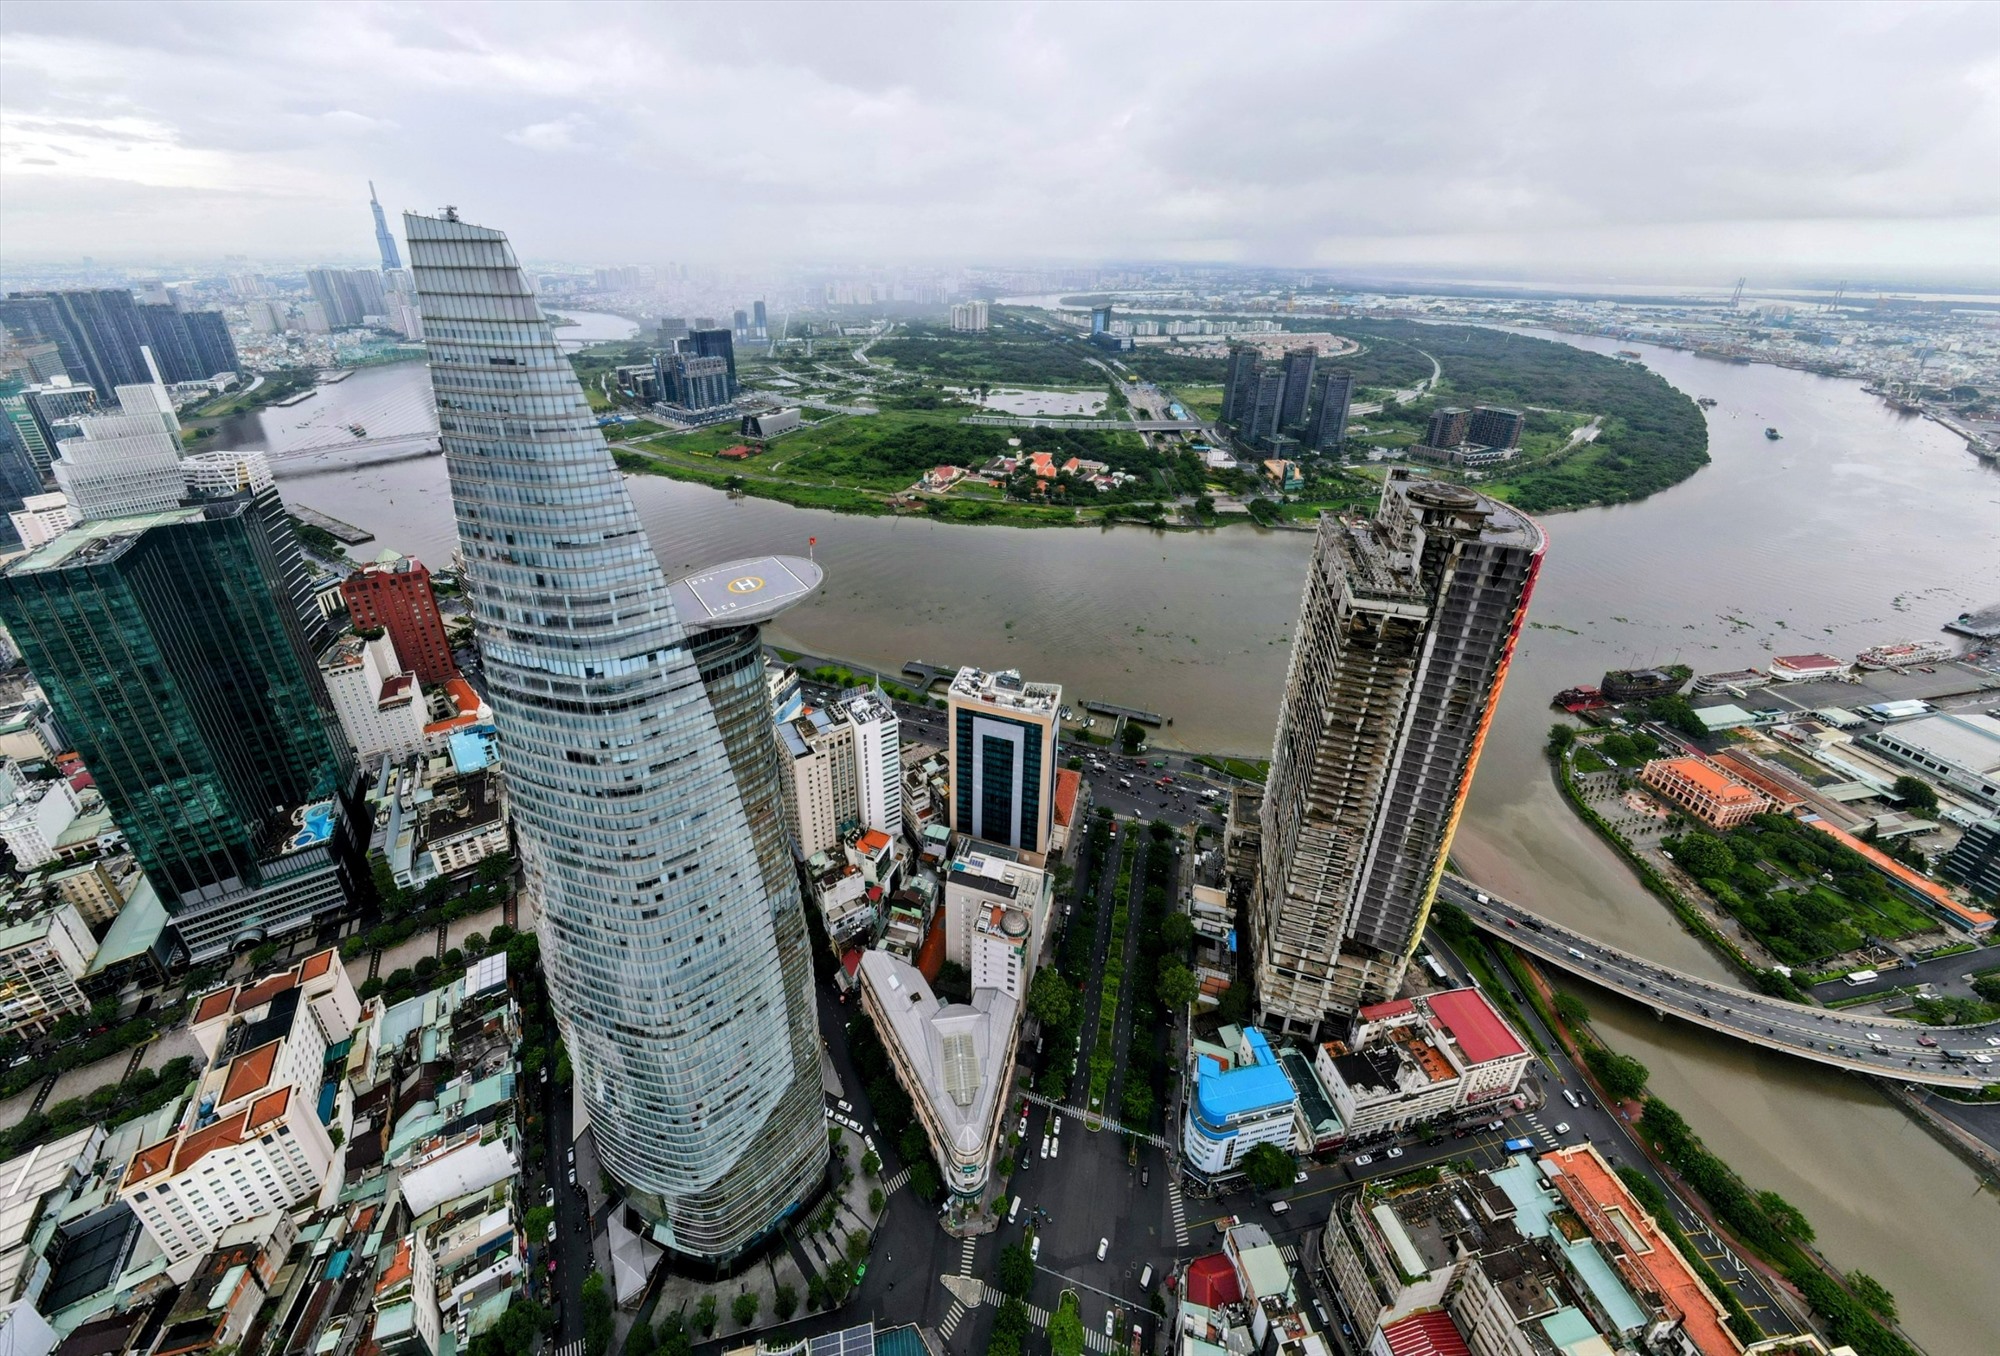 Trái ngược với khung cảnh hiện đại của bến Bạch Đằng là cảnh hoang sơ của bờ sông Sài Gòn phía khu đô thị mới Thủ Thiêm. 